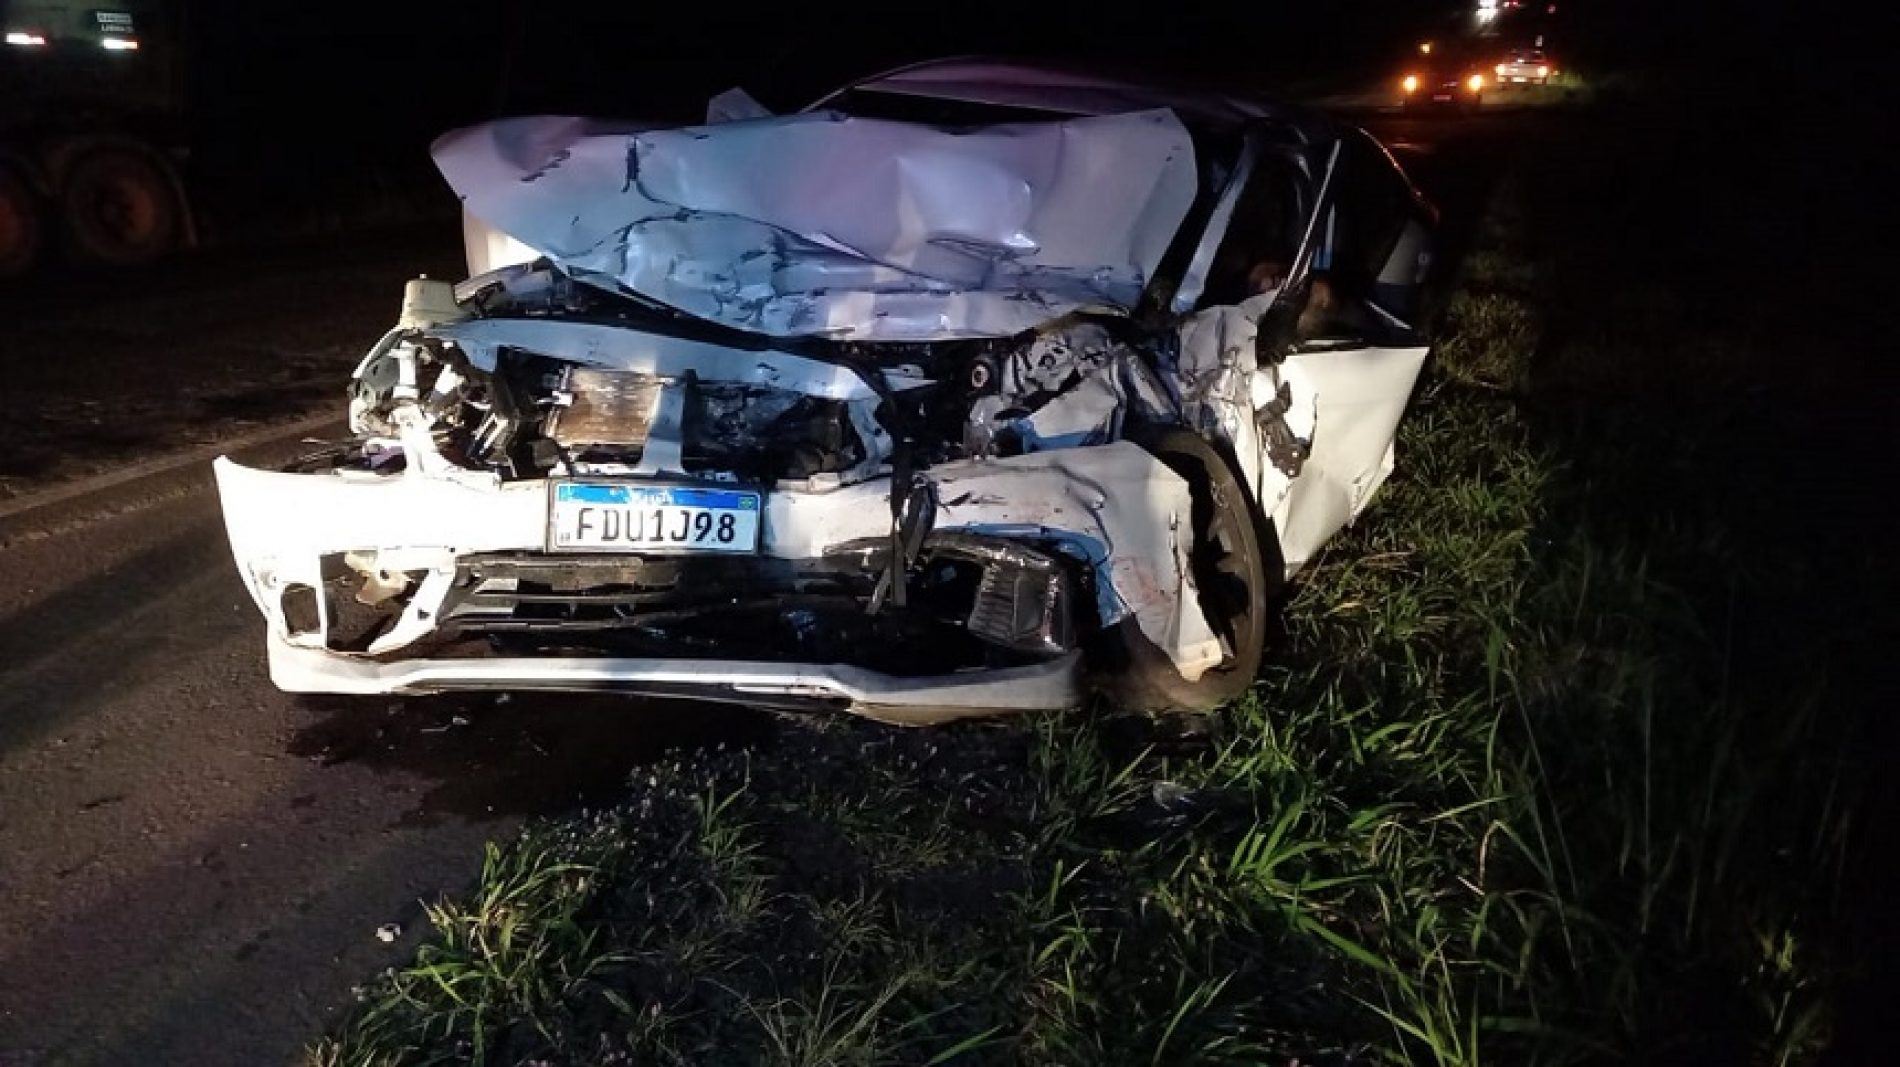 Motorista morre ao bater de frente com caminhão na Assis Chateaubriand